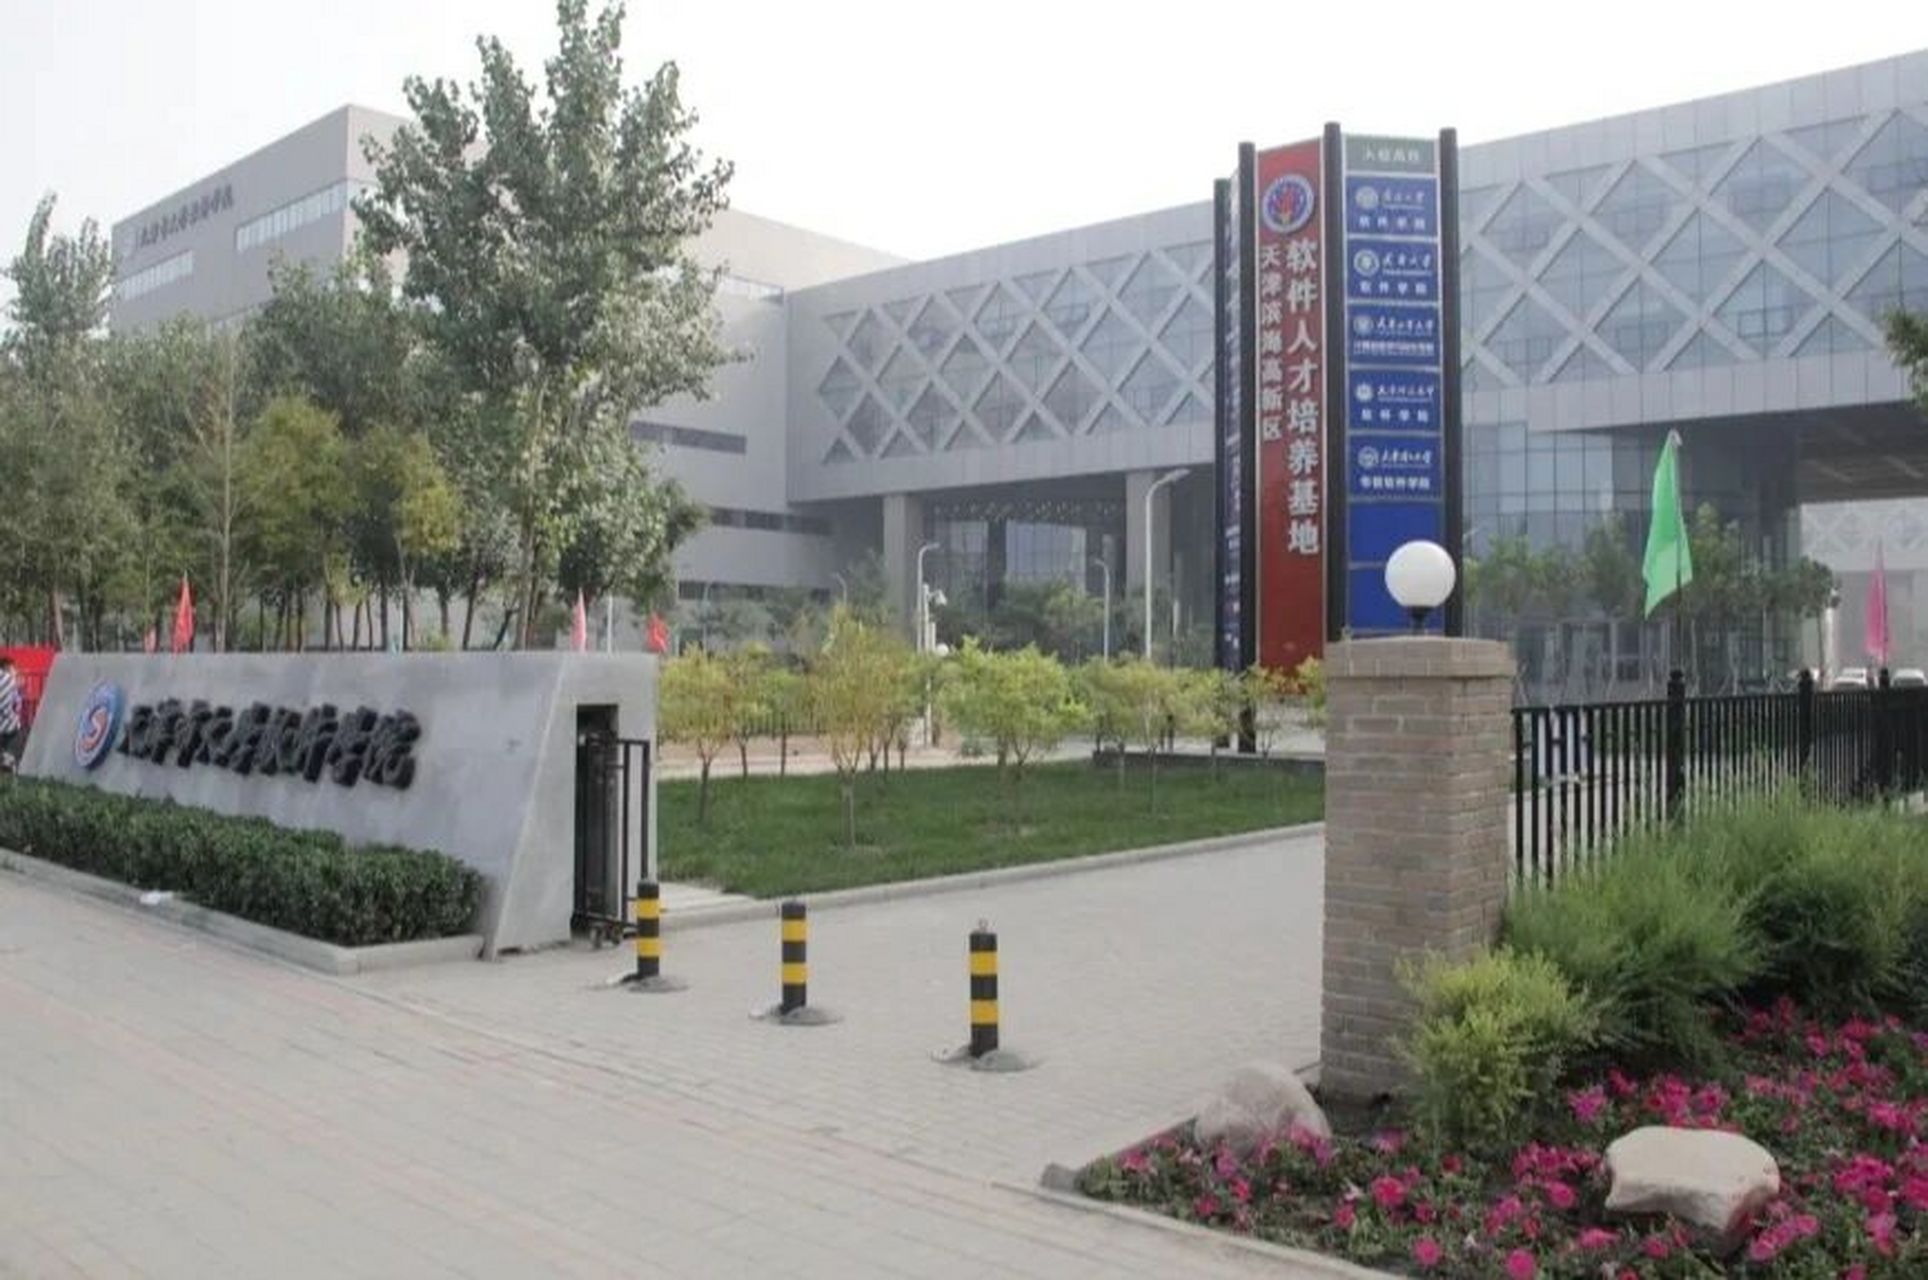 天津市大学软件学院图片